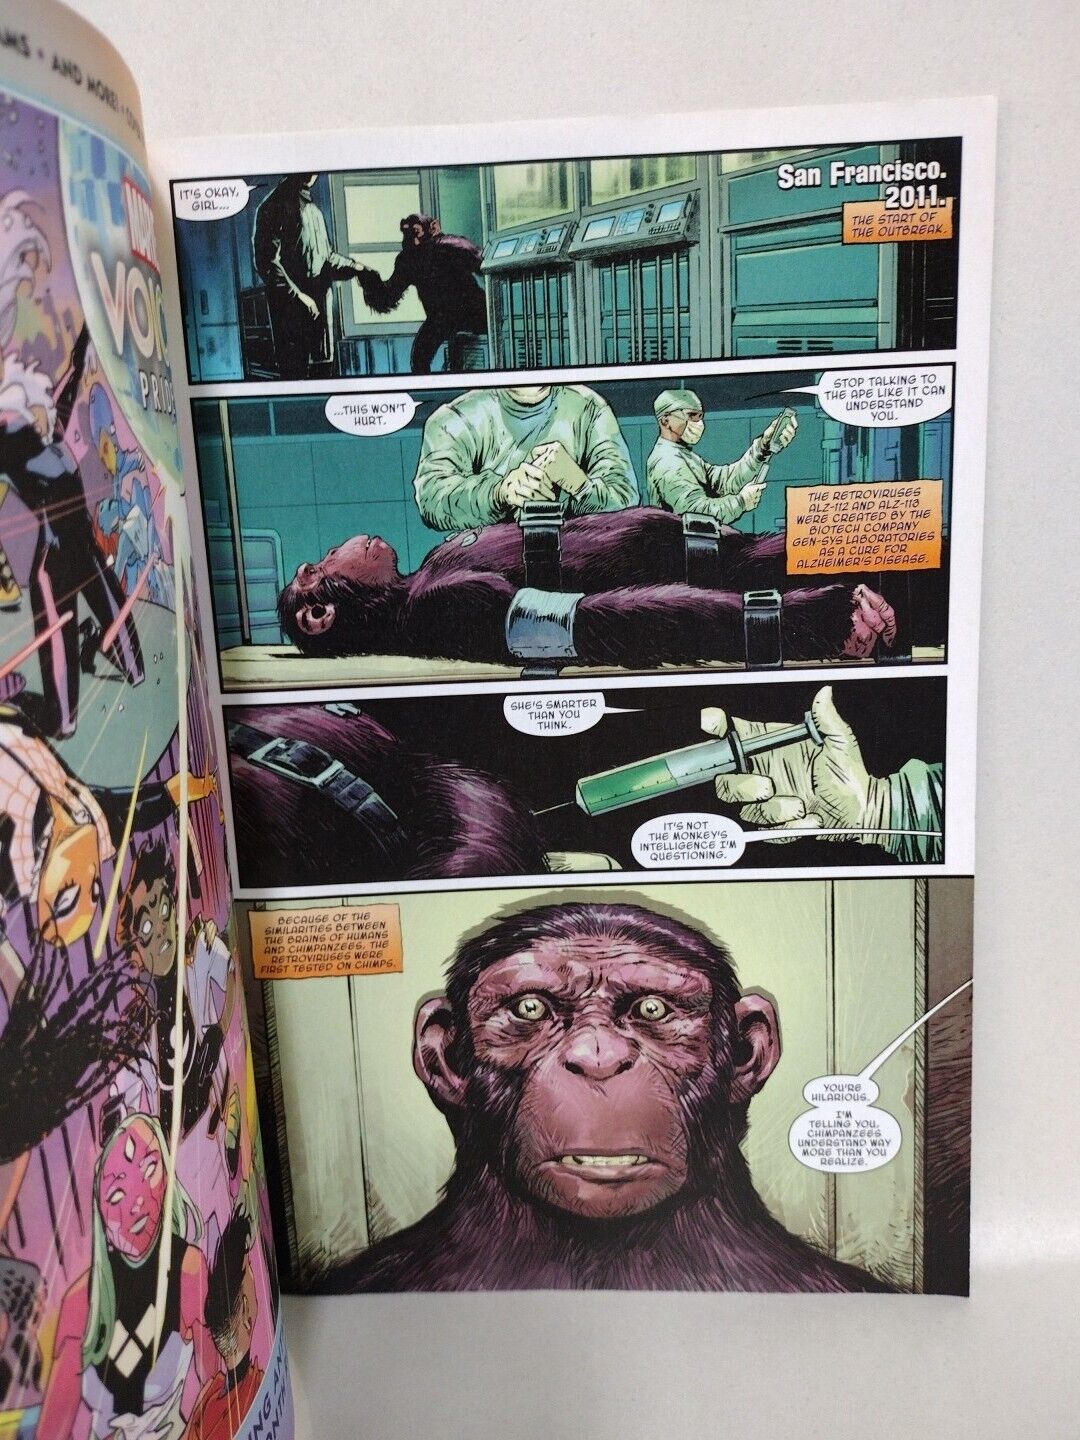 Planet Of The Apes #1 Sketch Cover Variant Comic 2023 W Dave Castr Original Art